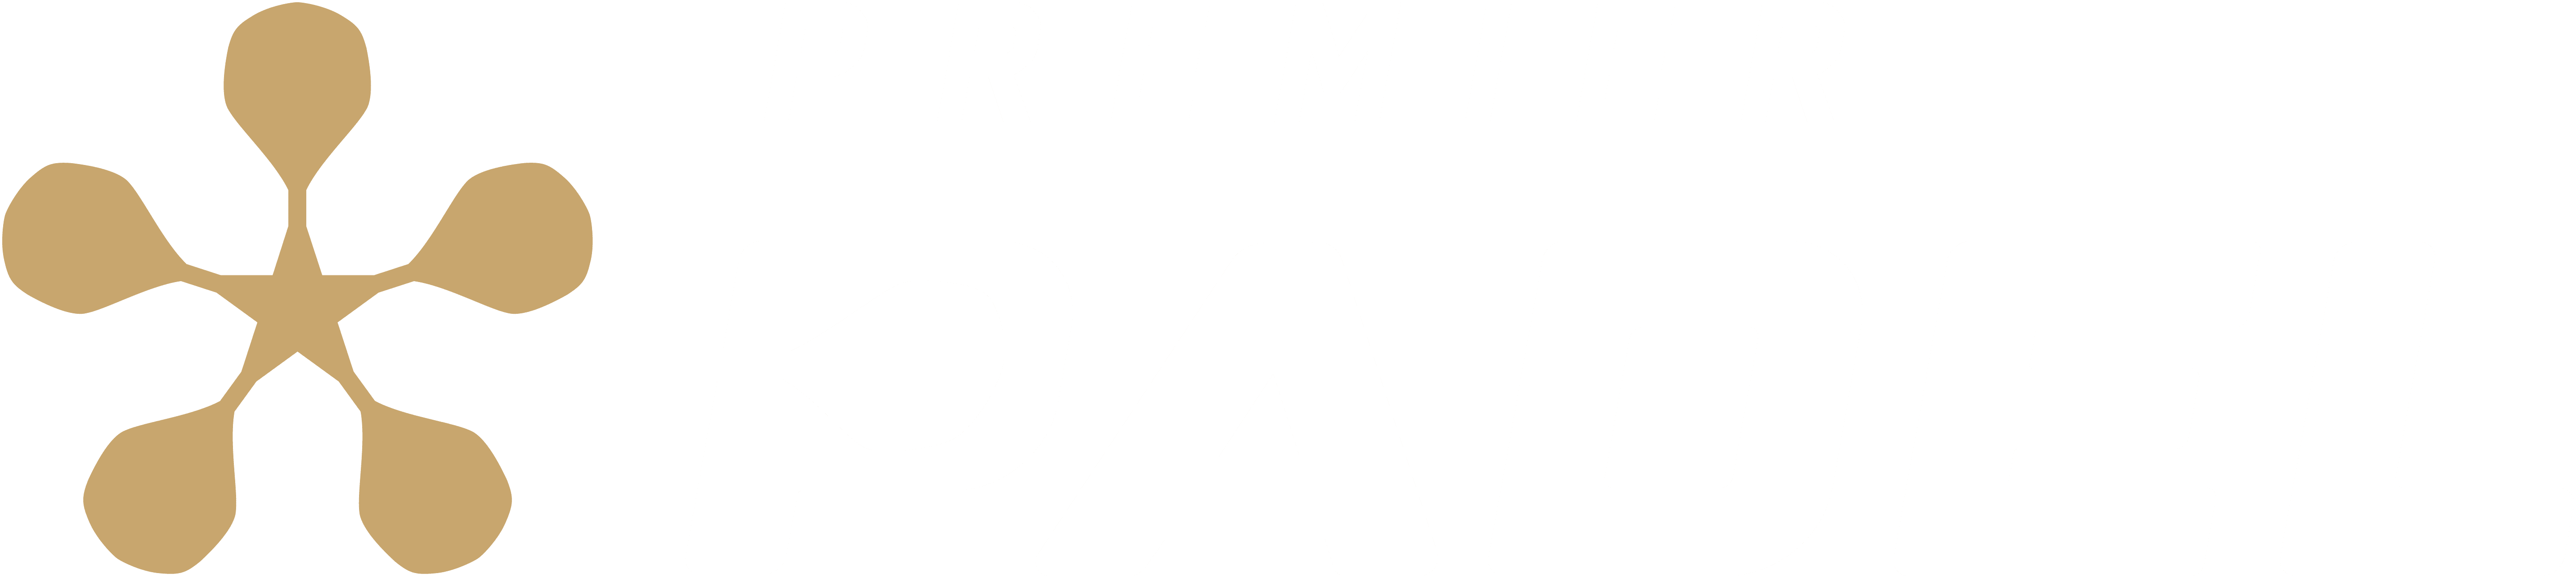 Premier Padel - logo